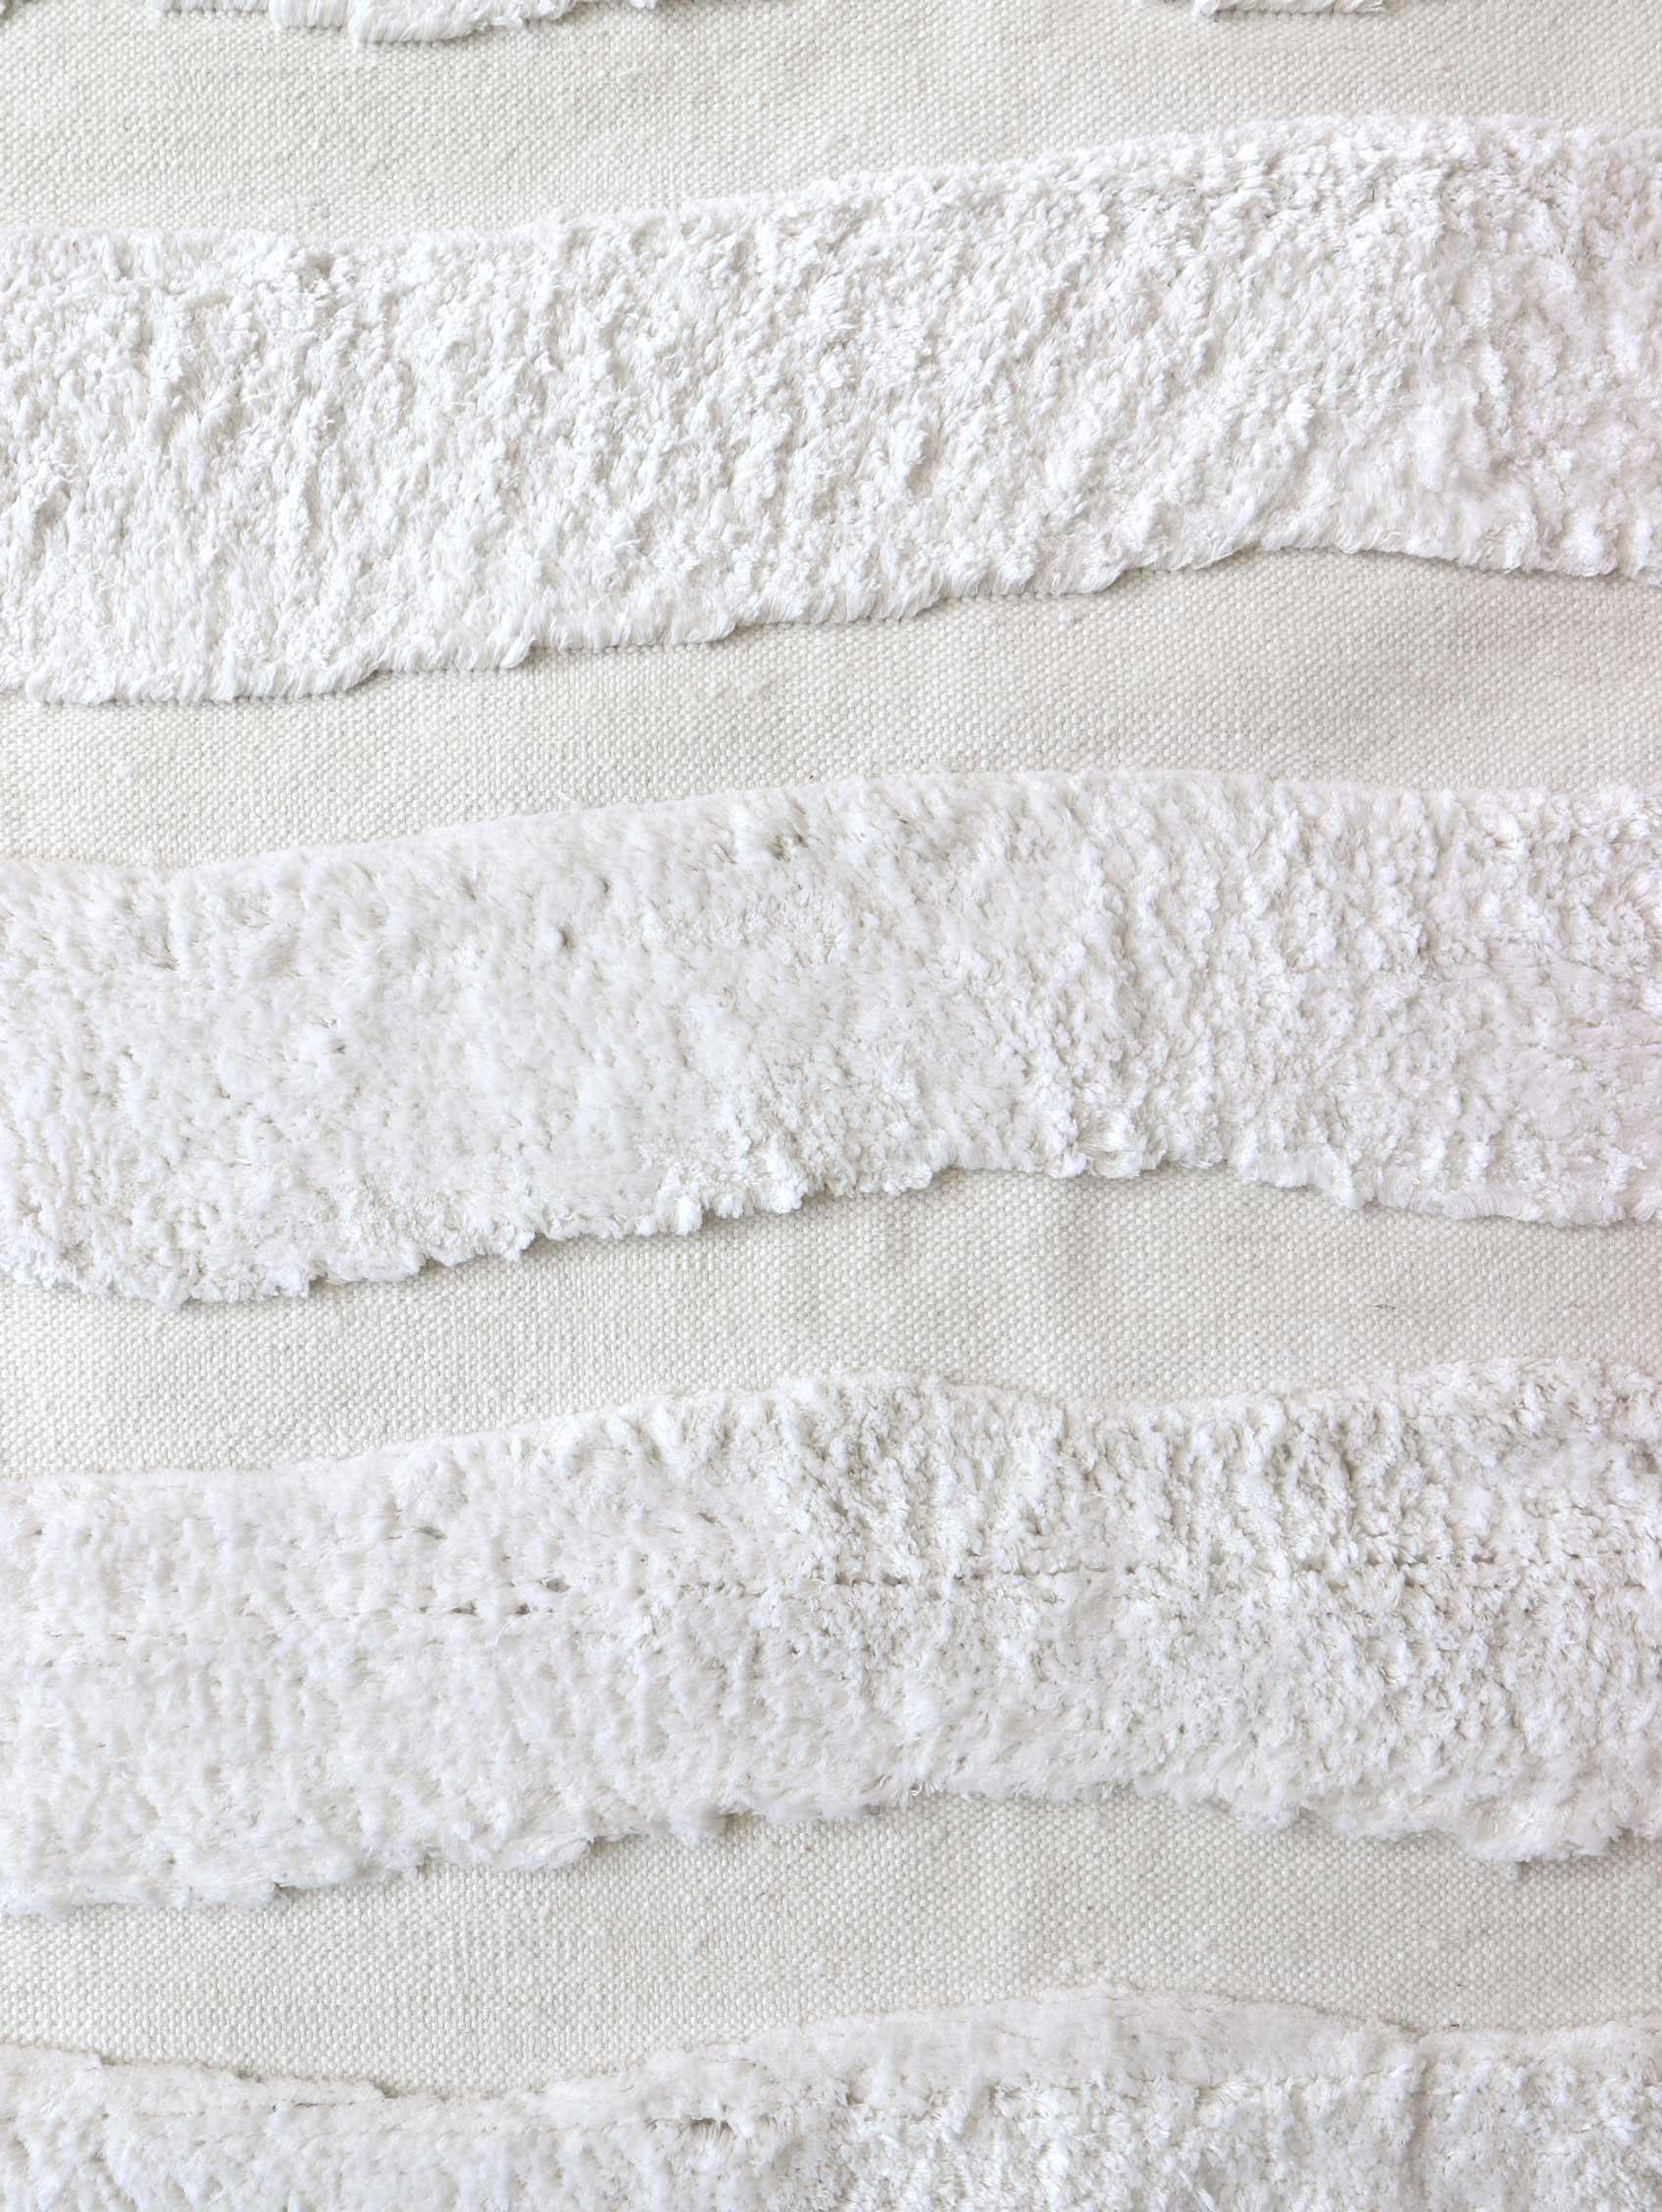 Motif du tapis : Rayures audacieuses - Lefko White
MATERIAL : Poil de laine mérinos/ Laine de Nouvelle-Zélande tissée à plat
Qualité : Laine tissée à plat et poils marocains, poils de 10 mm, tissés à la main. 
Taille : 6'-0